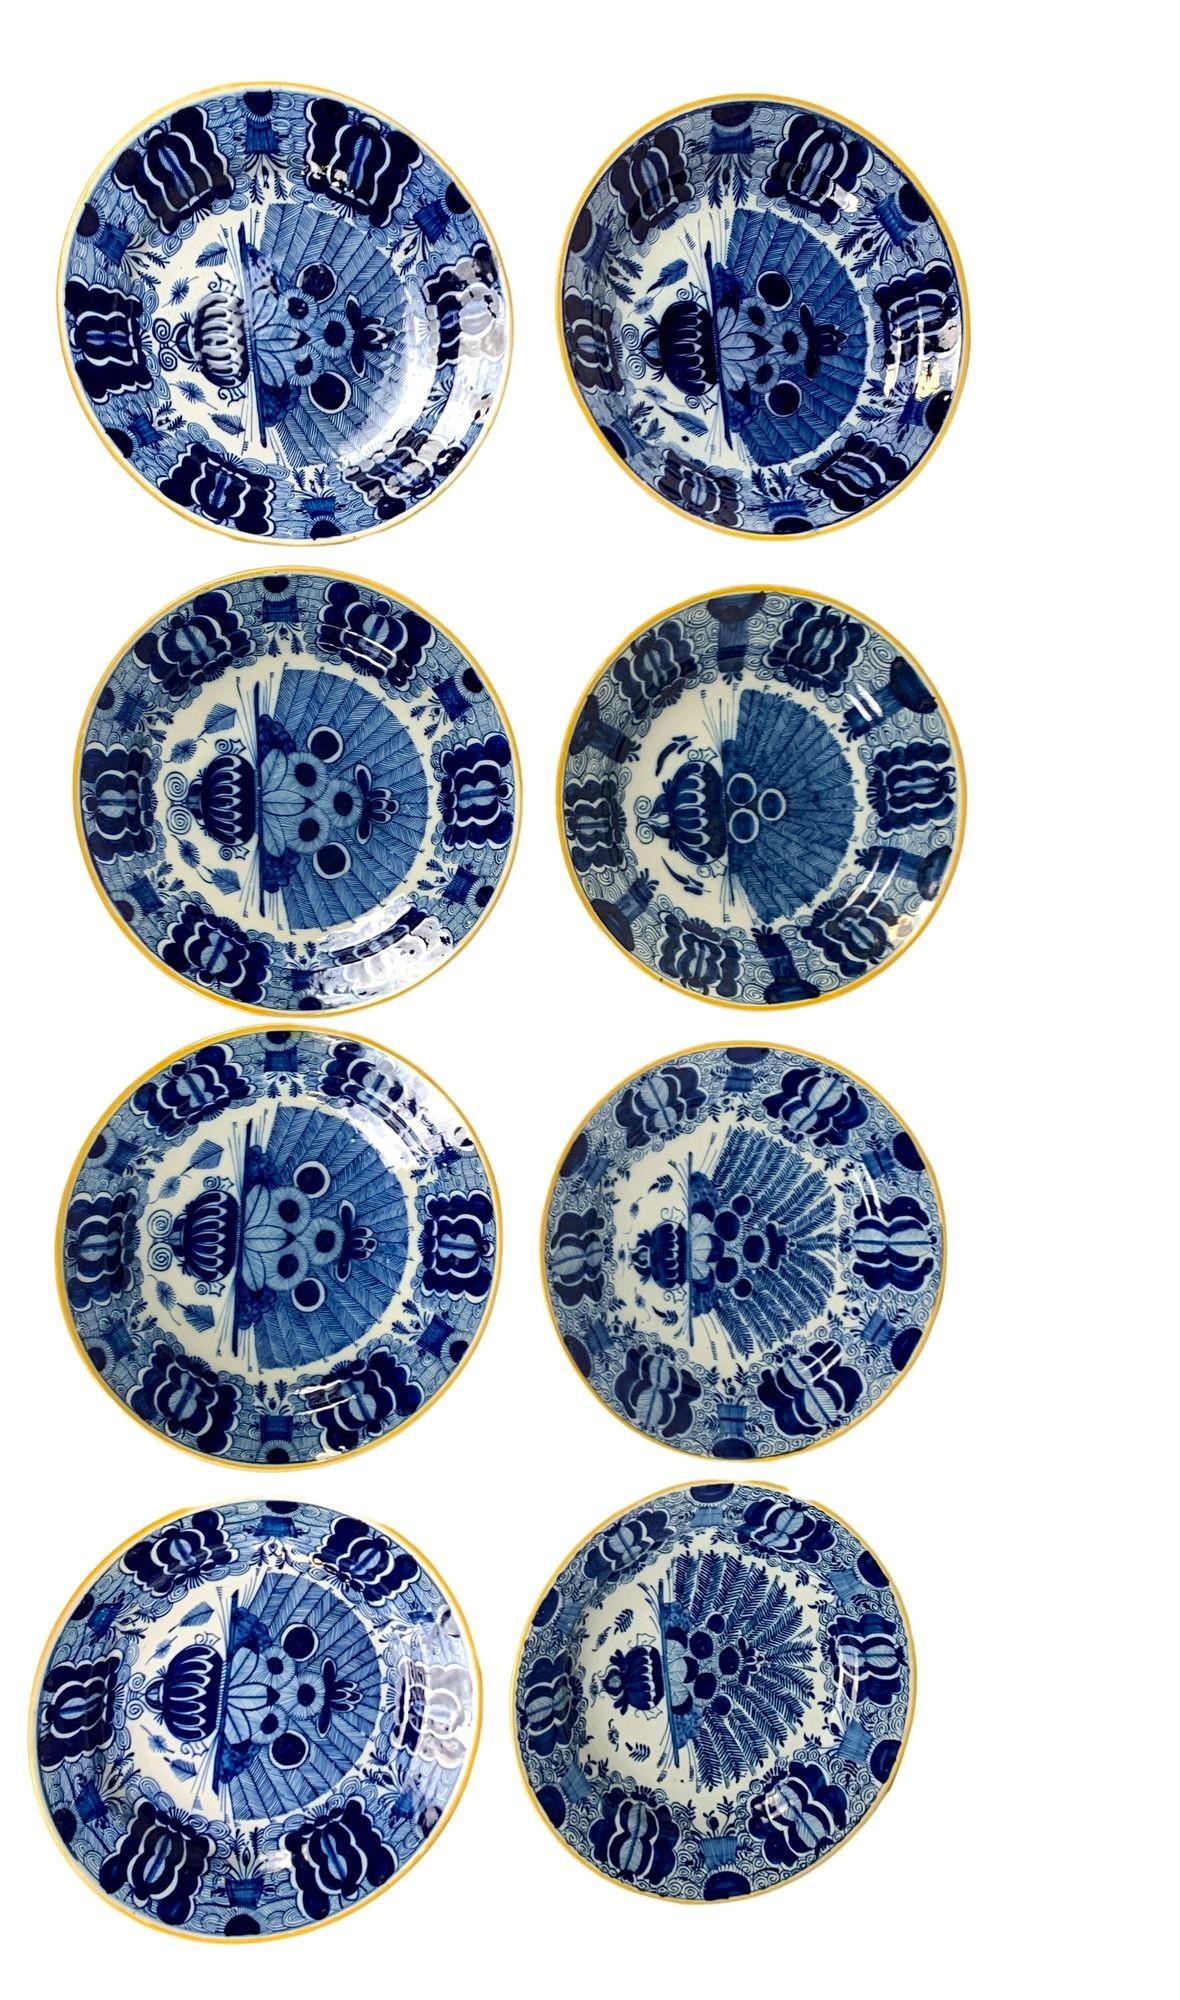 Cet ensemble de huit assiettes bleues et blanches de Delft a été fabriqué par De Vergulde Bloempot et De Klaaw aux Pays-Bas entre 1780 et 1820.
Ils présentent le magnifique motif 